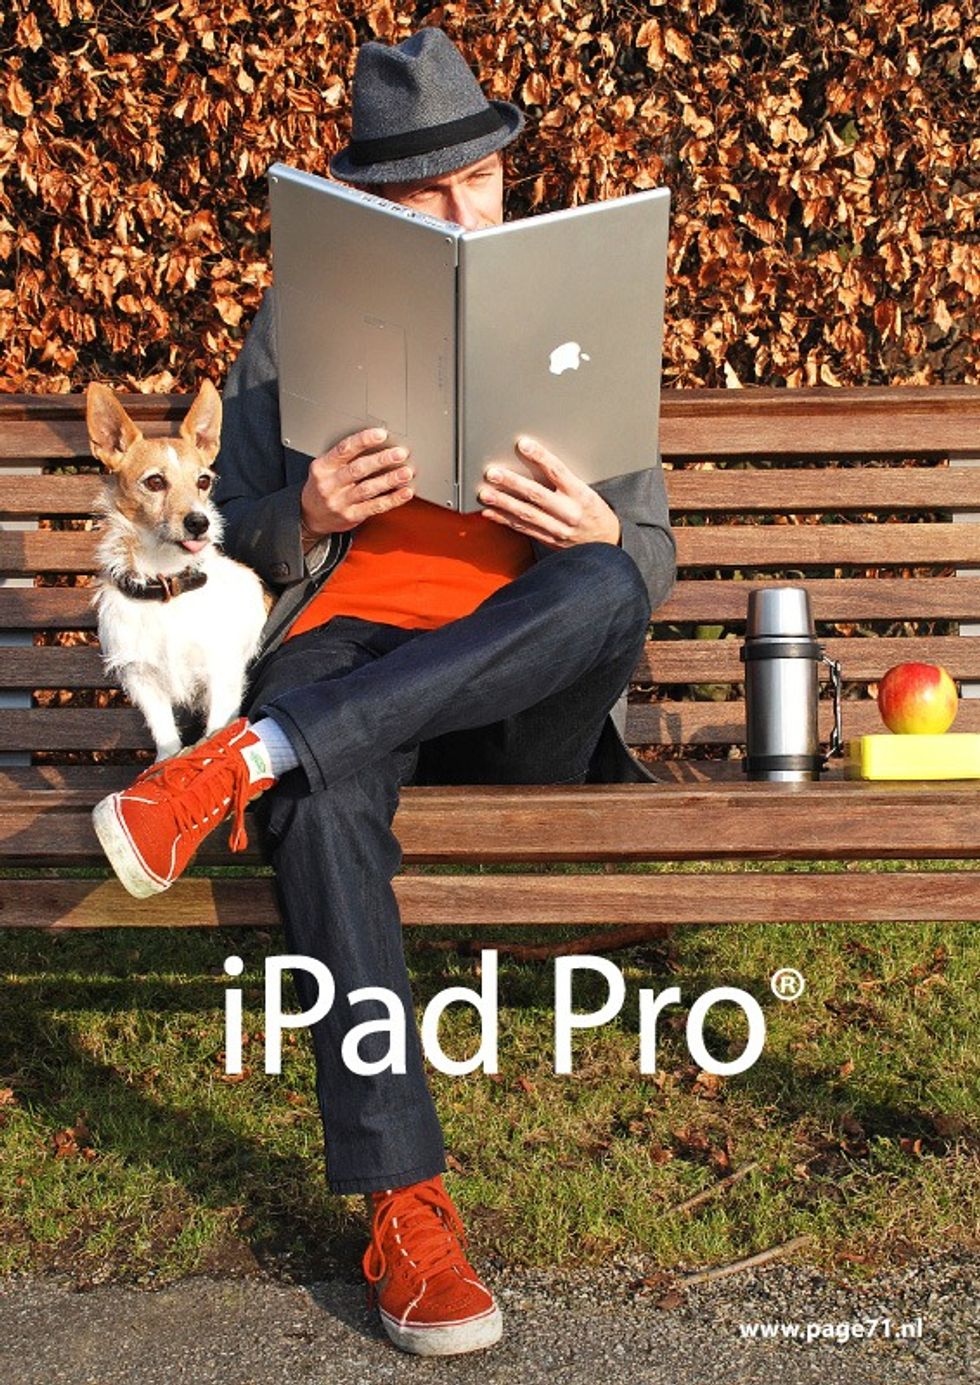 iPad Pro sarà la risposta di Apple al Surface Pro 3